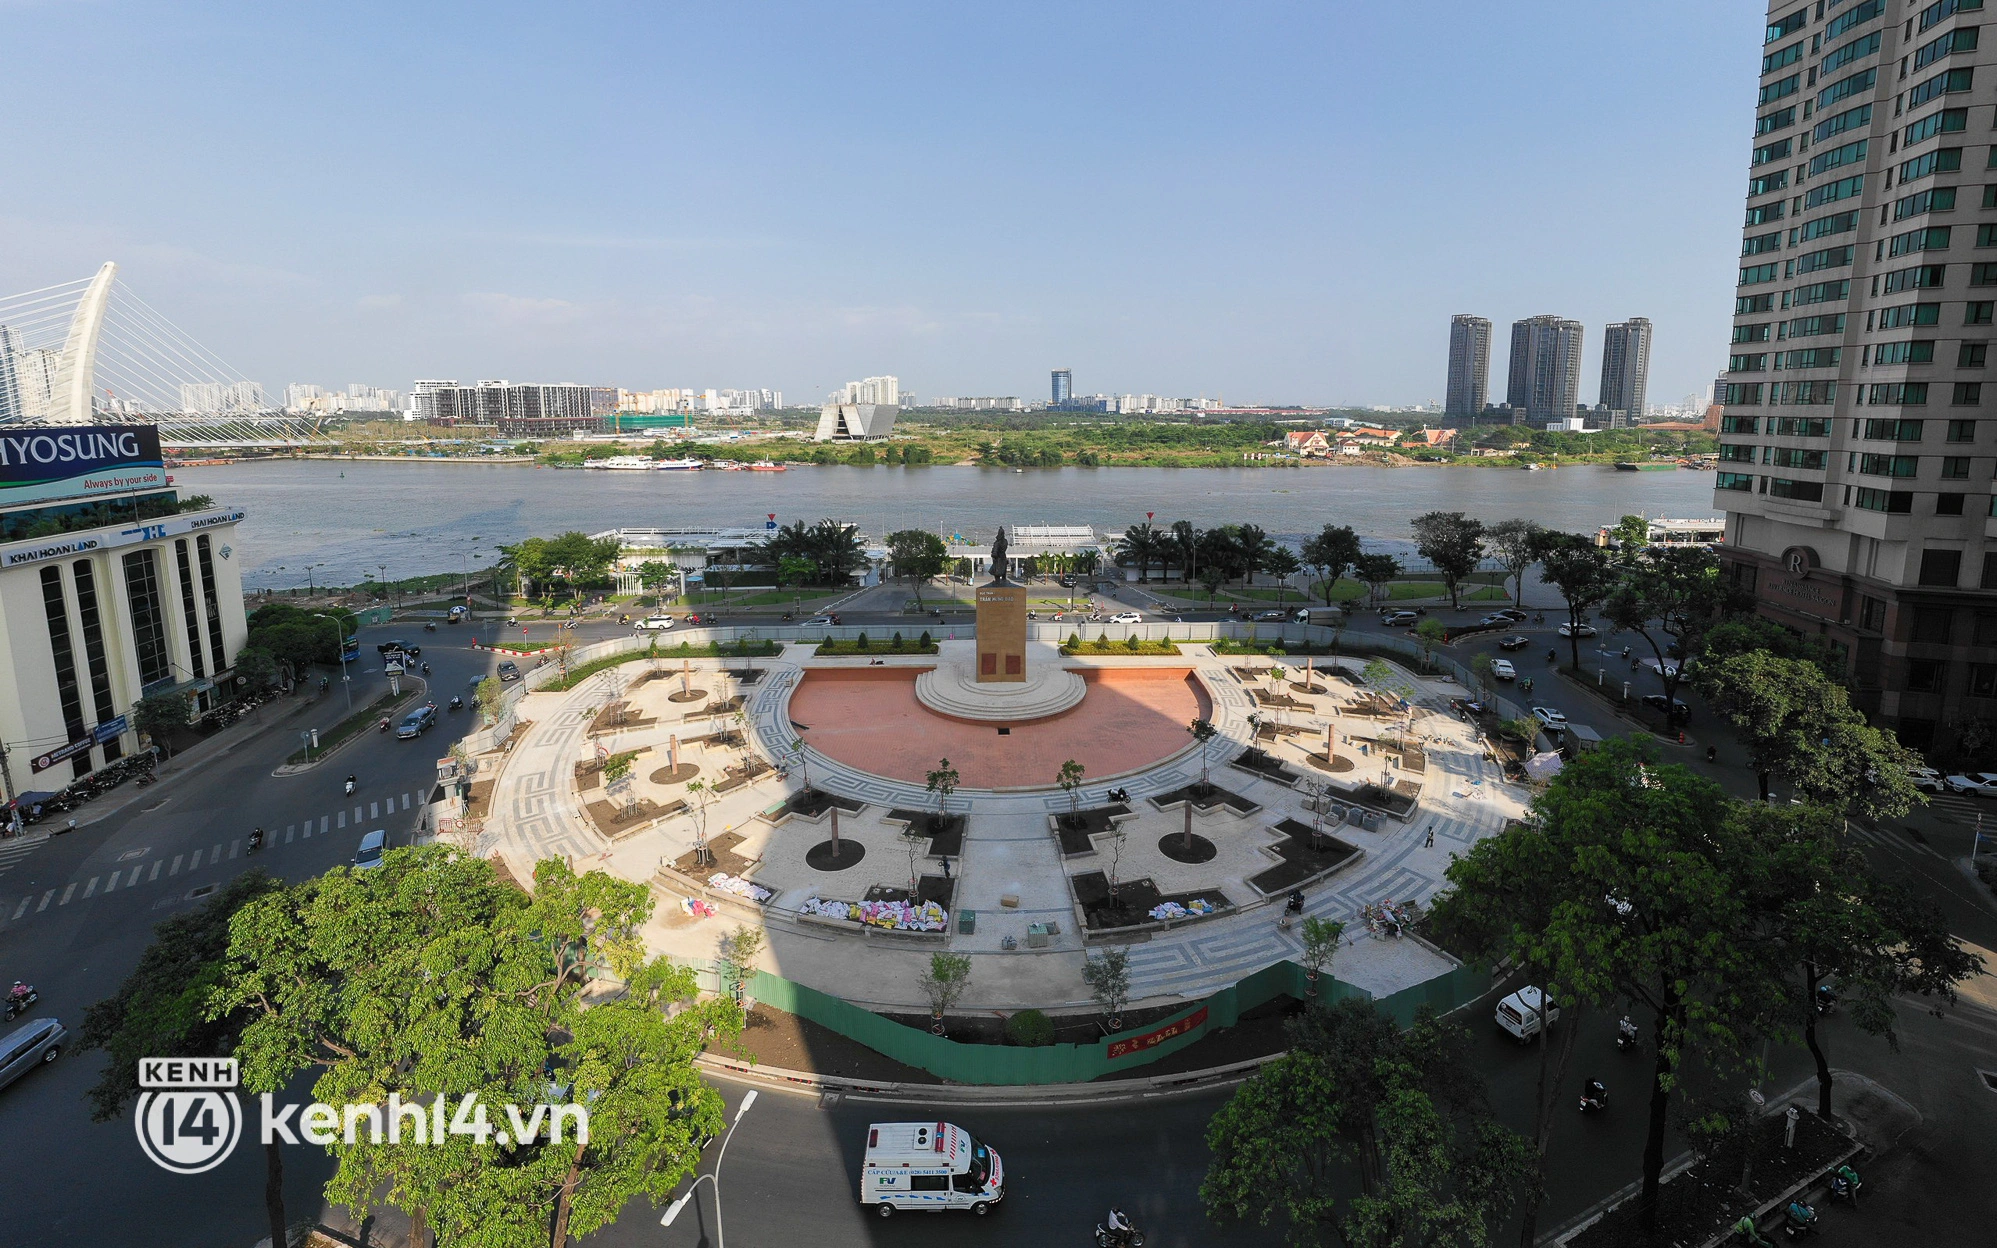 Ảnh: Khu tượng đài Trần Hưng Đạo được khoác “áo” mới hiện đại bên sông Sài Gòn